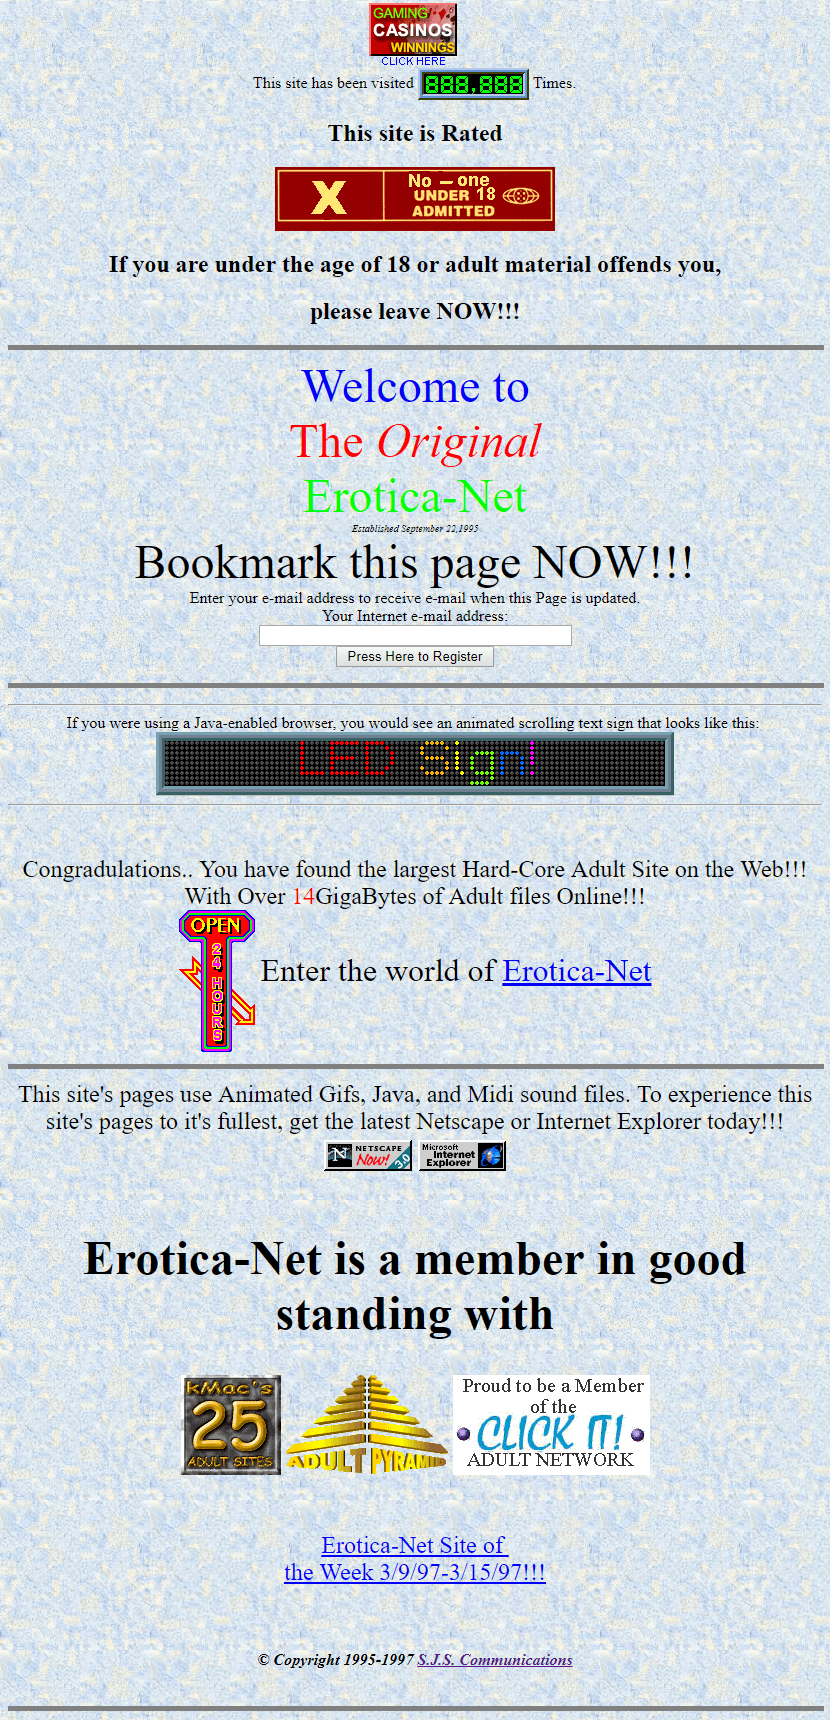 Erotica-Net in 1997